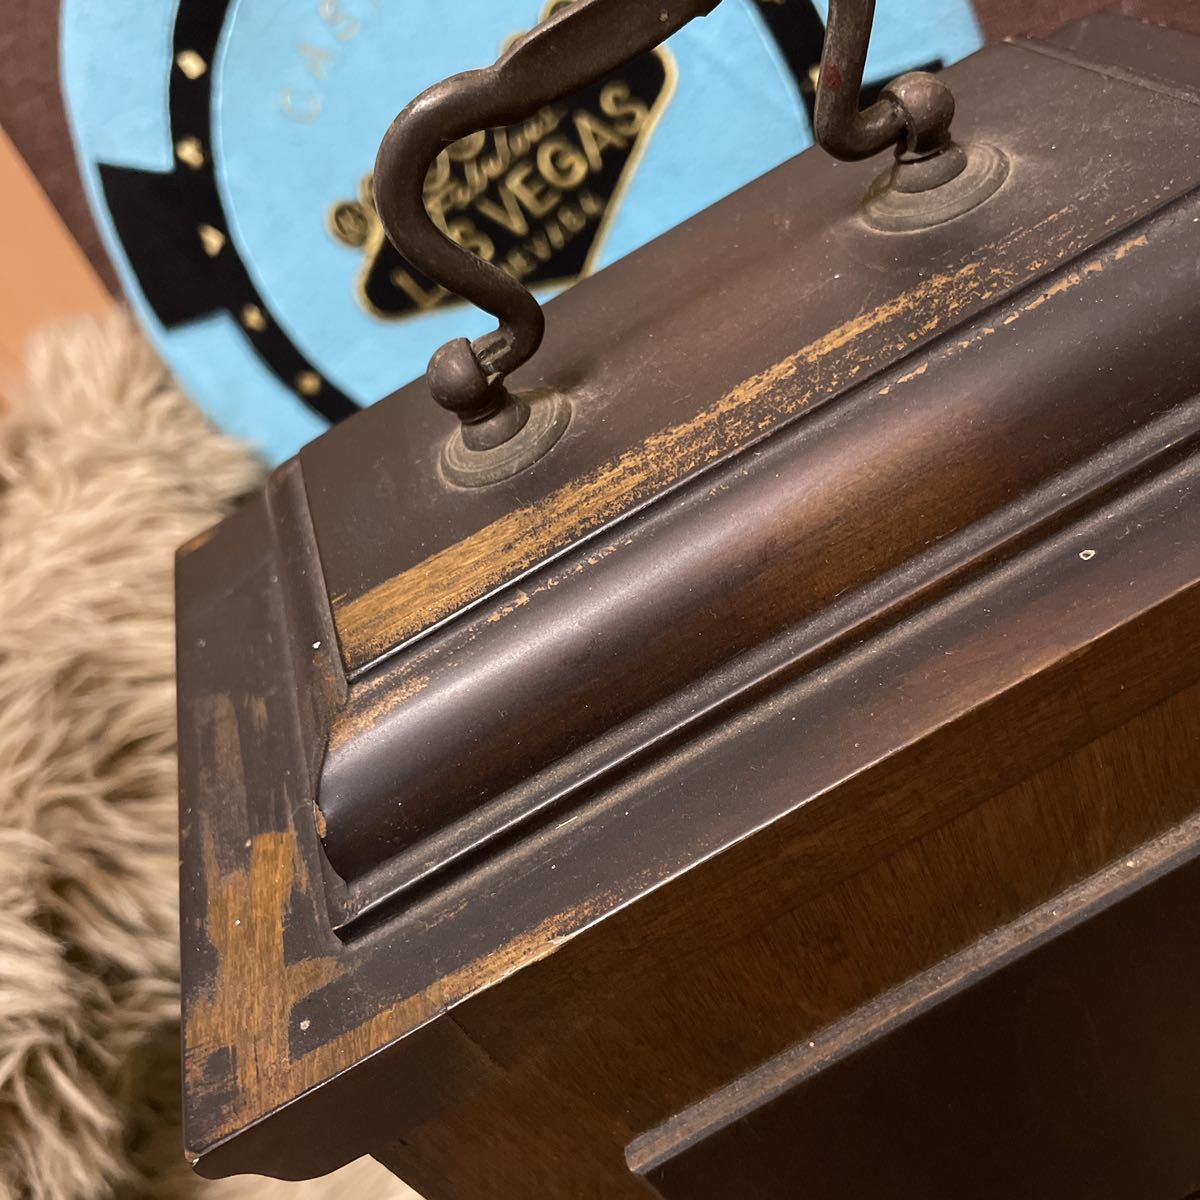  античный настольные часы KIENZLE механический завод zen мой тип Германия производства интерьер gold tsure класть часы антиквариат товар утиль Vintage 